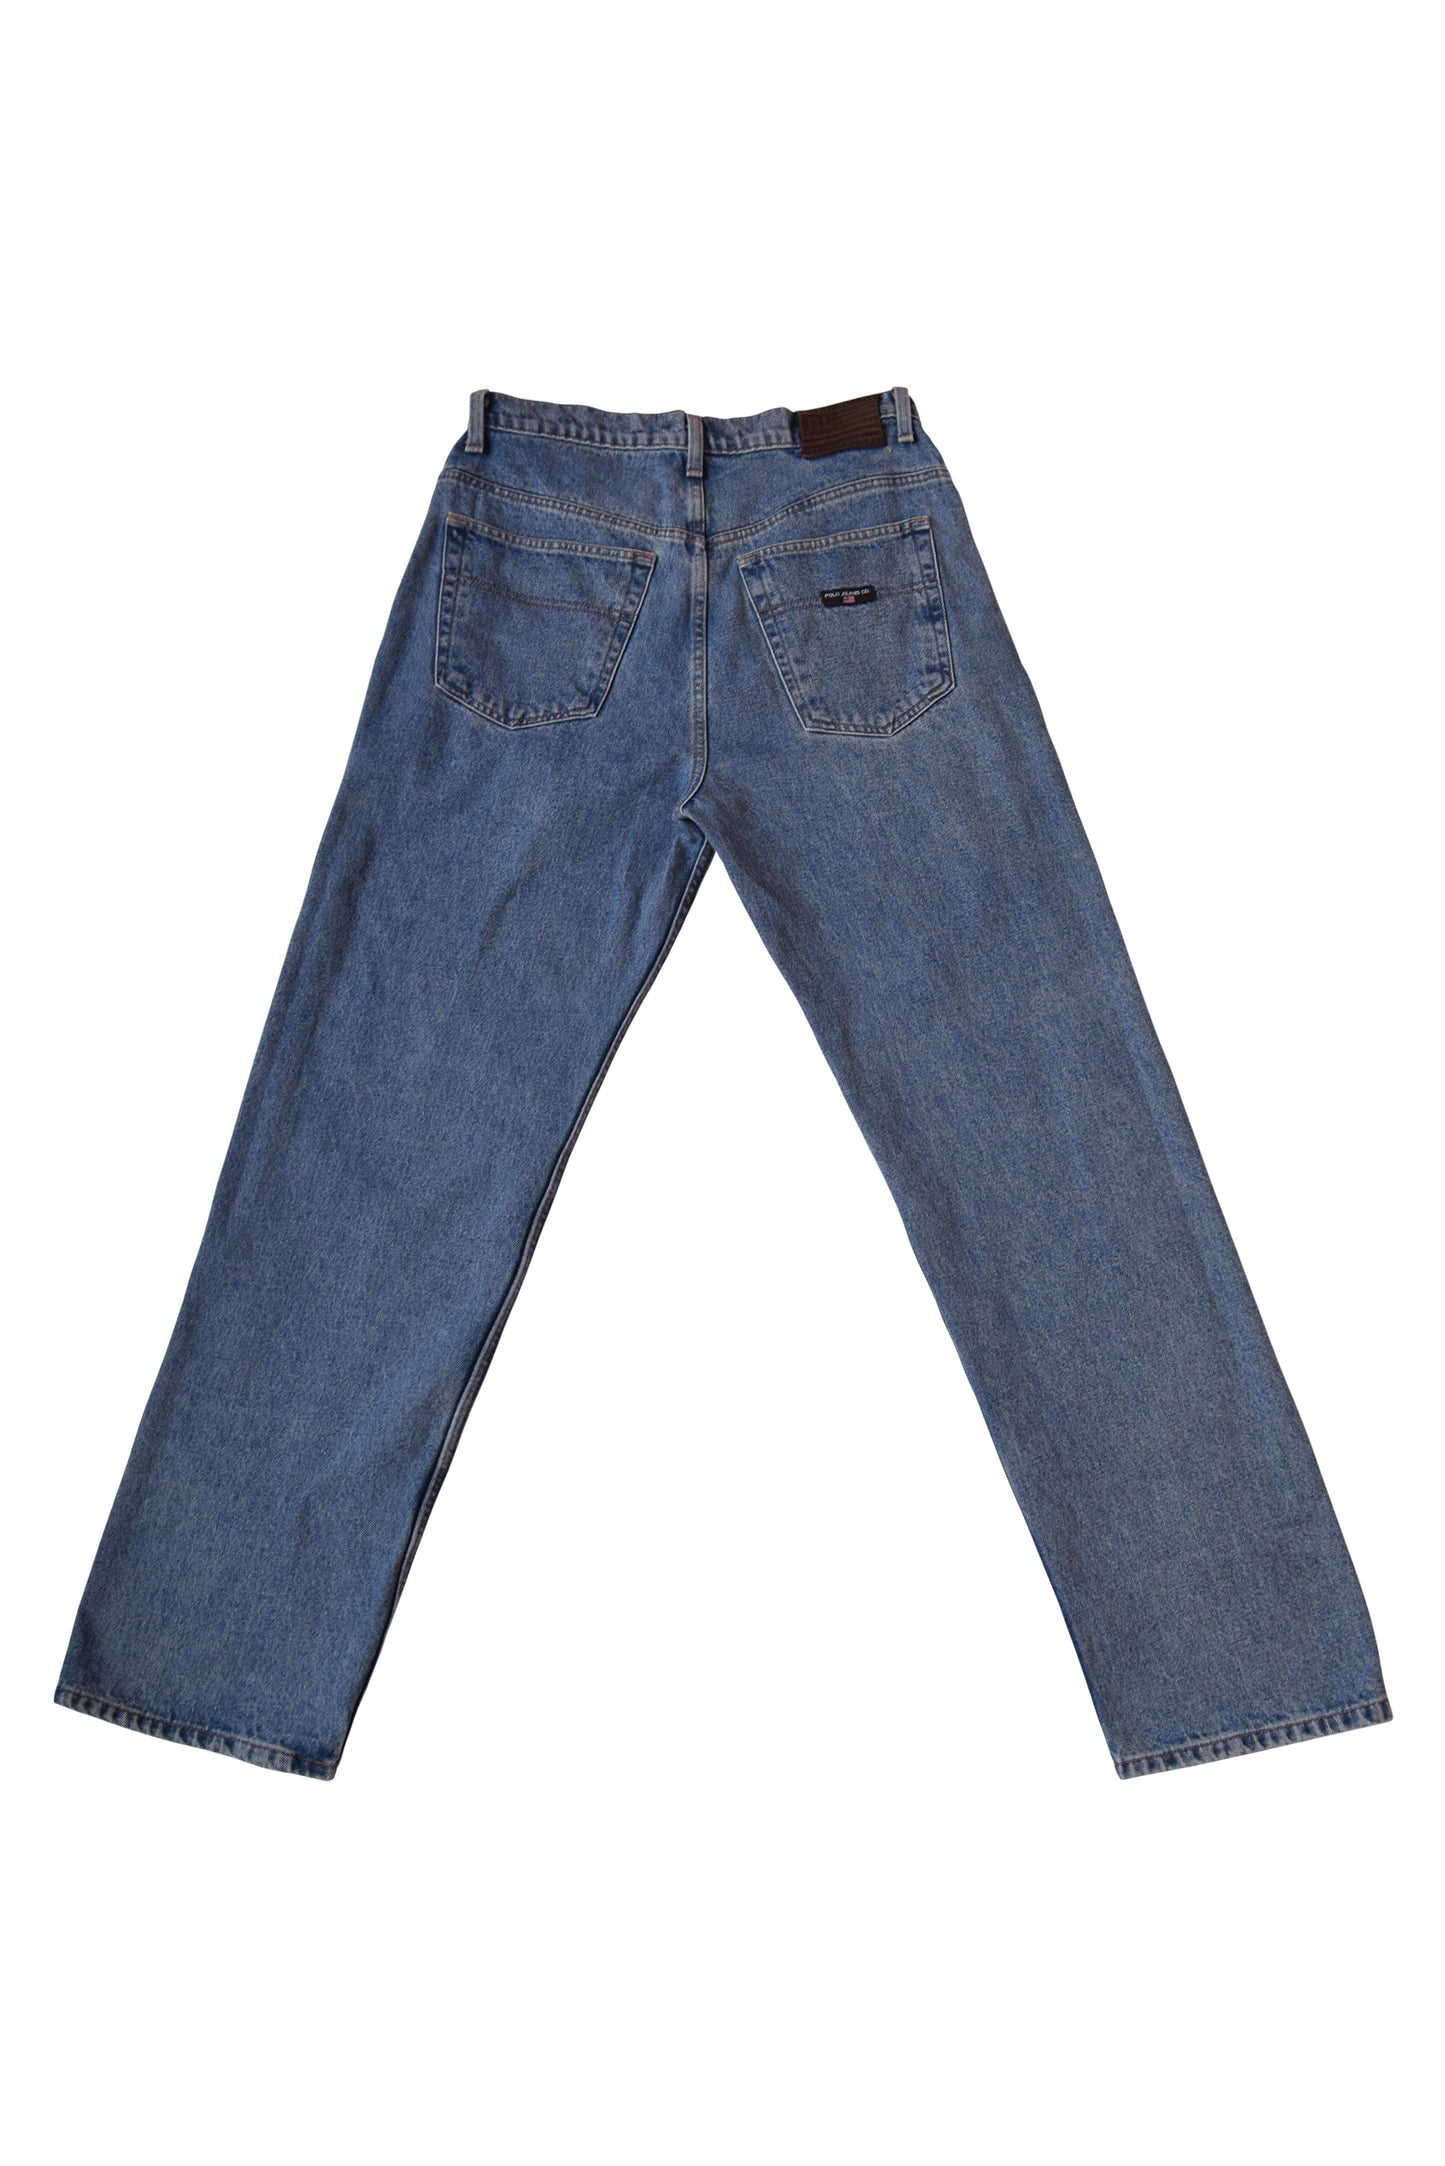 Vintage Ralph Lauren Polo Jeans Company Denim 33X32